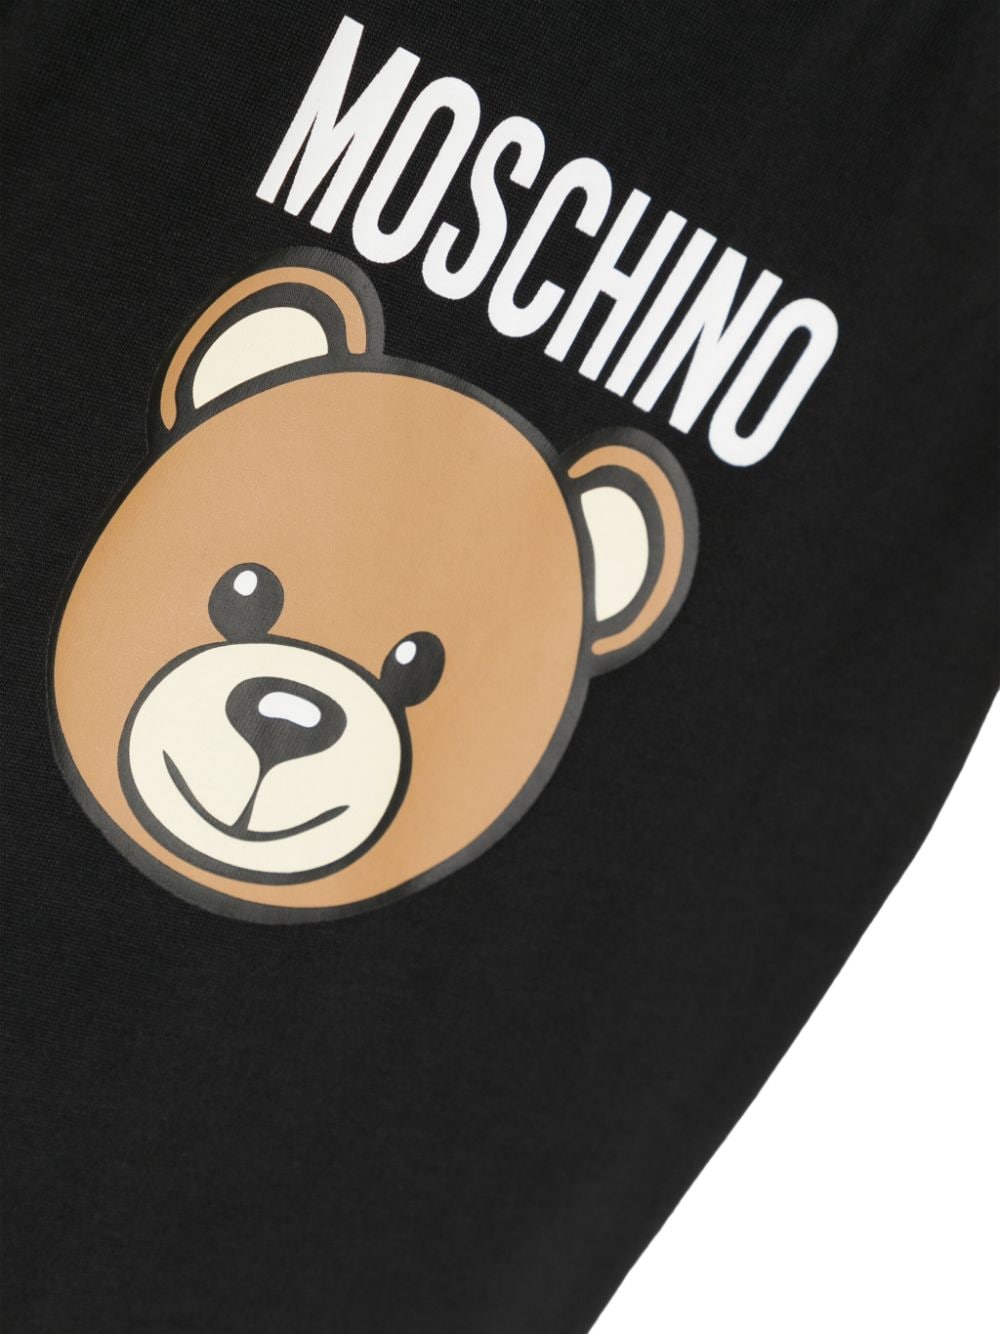 Moschino Kids Teddy Bear katoenen T-shirt Zwart